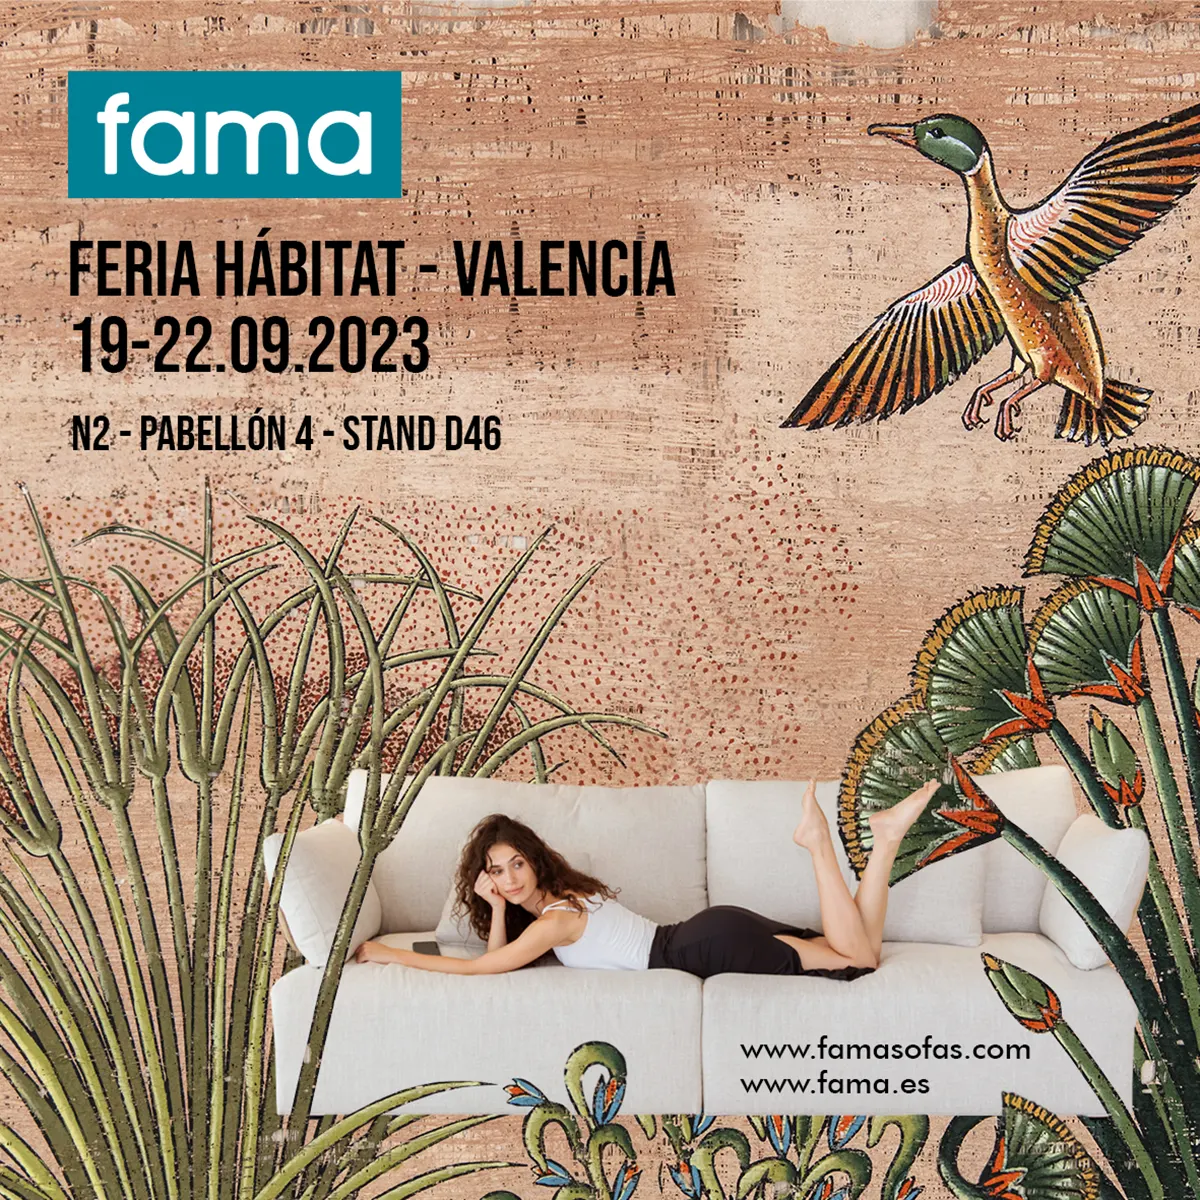 Fama at Habitat Valencia 2023